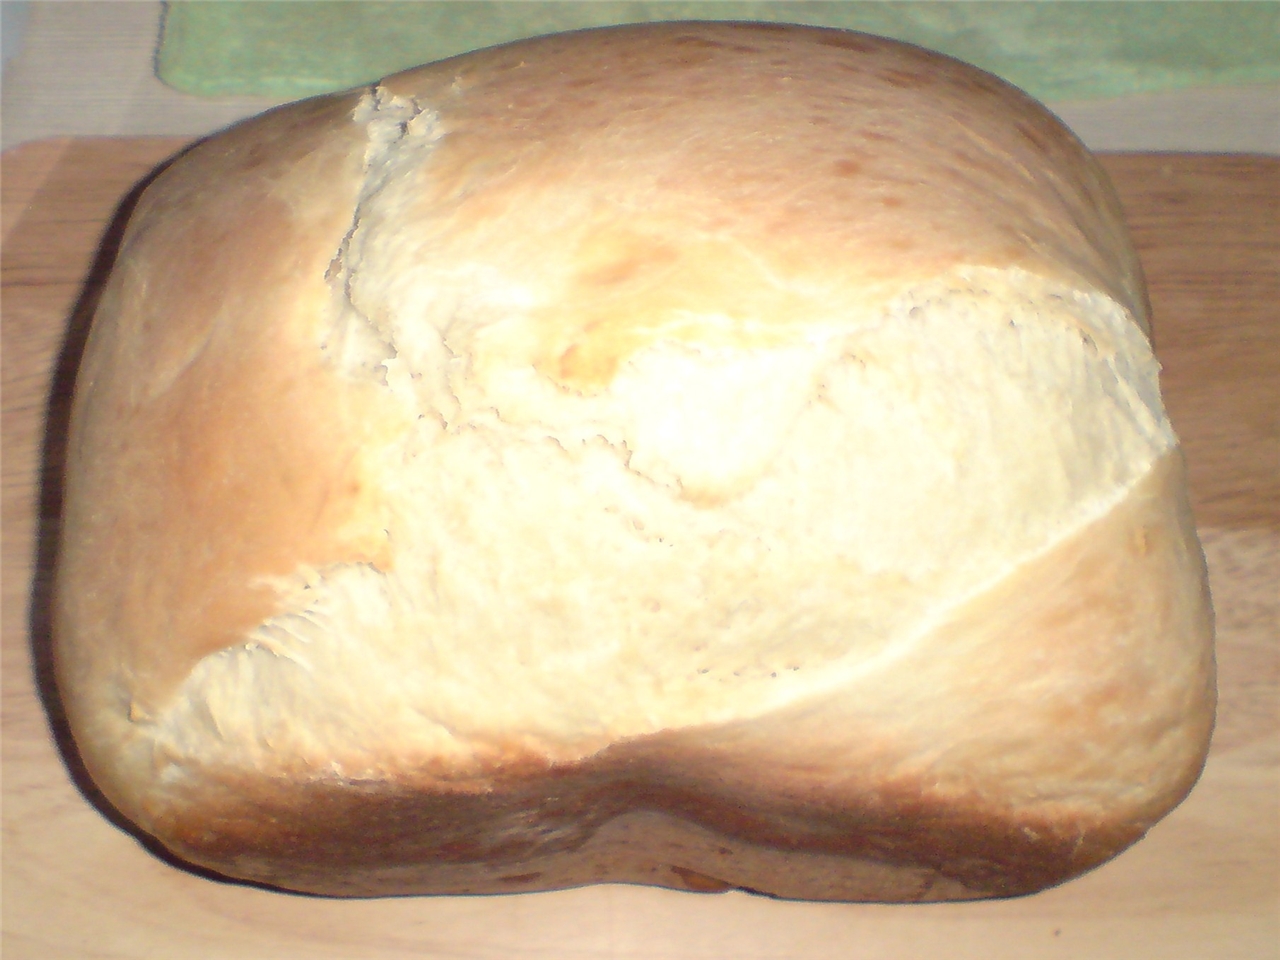 בורק. לחם לבן טעים